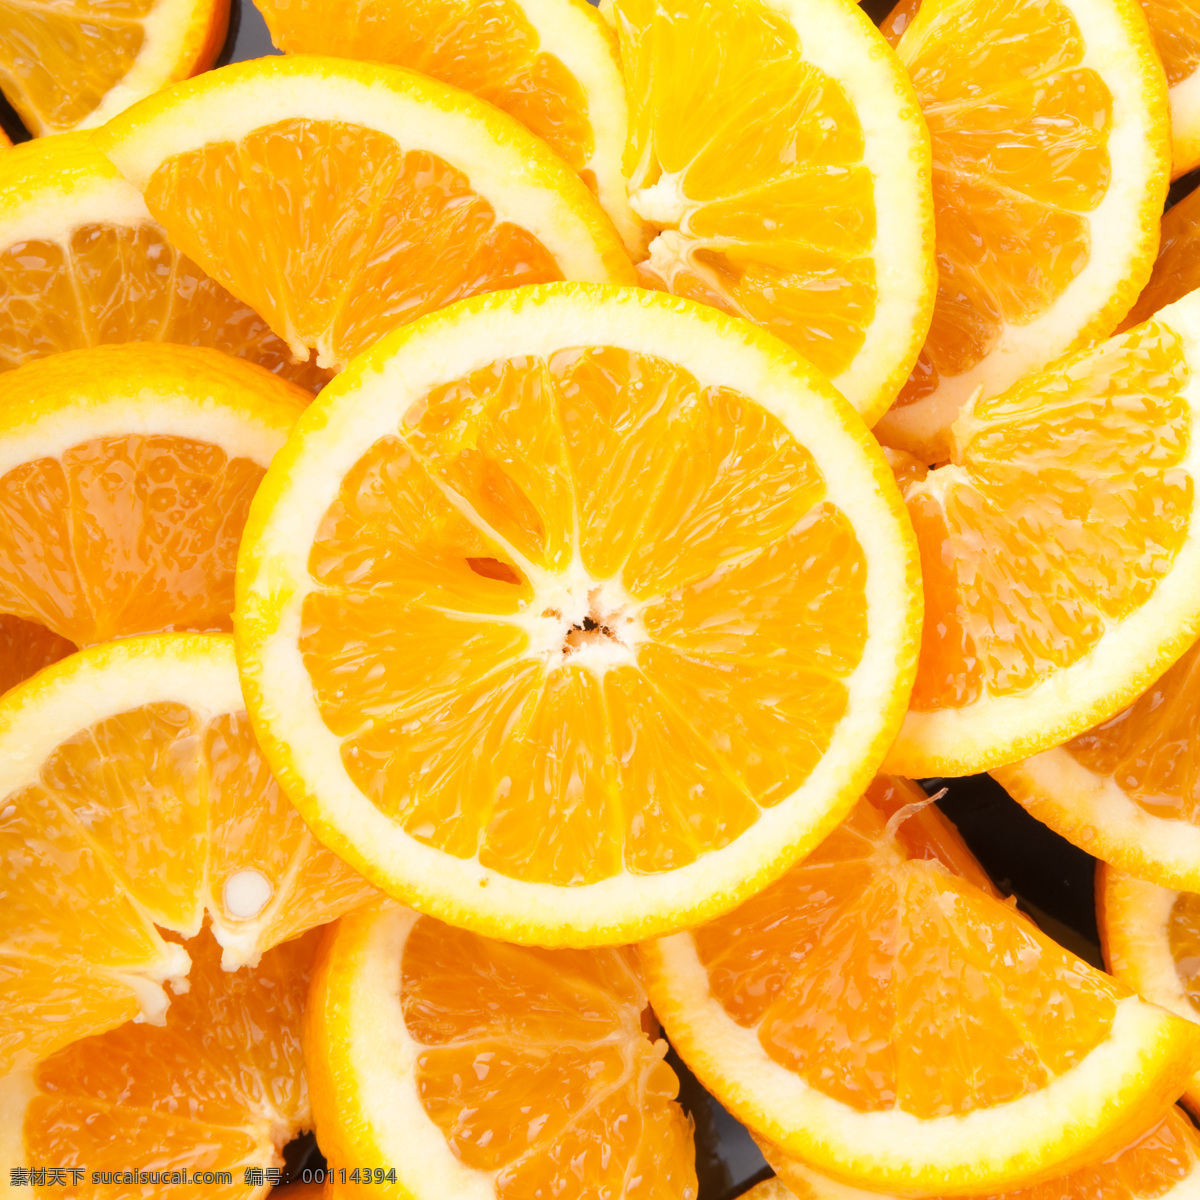 甜橙 鲜橙多 橘子 切开的橘子 橙子 脐橙 果粒橙 水果 切开的水果 水果摄影素材 生物世界